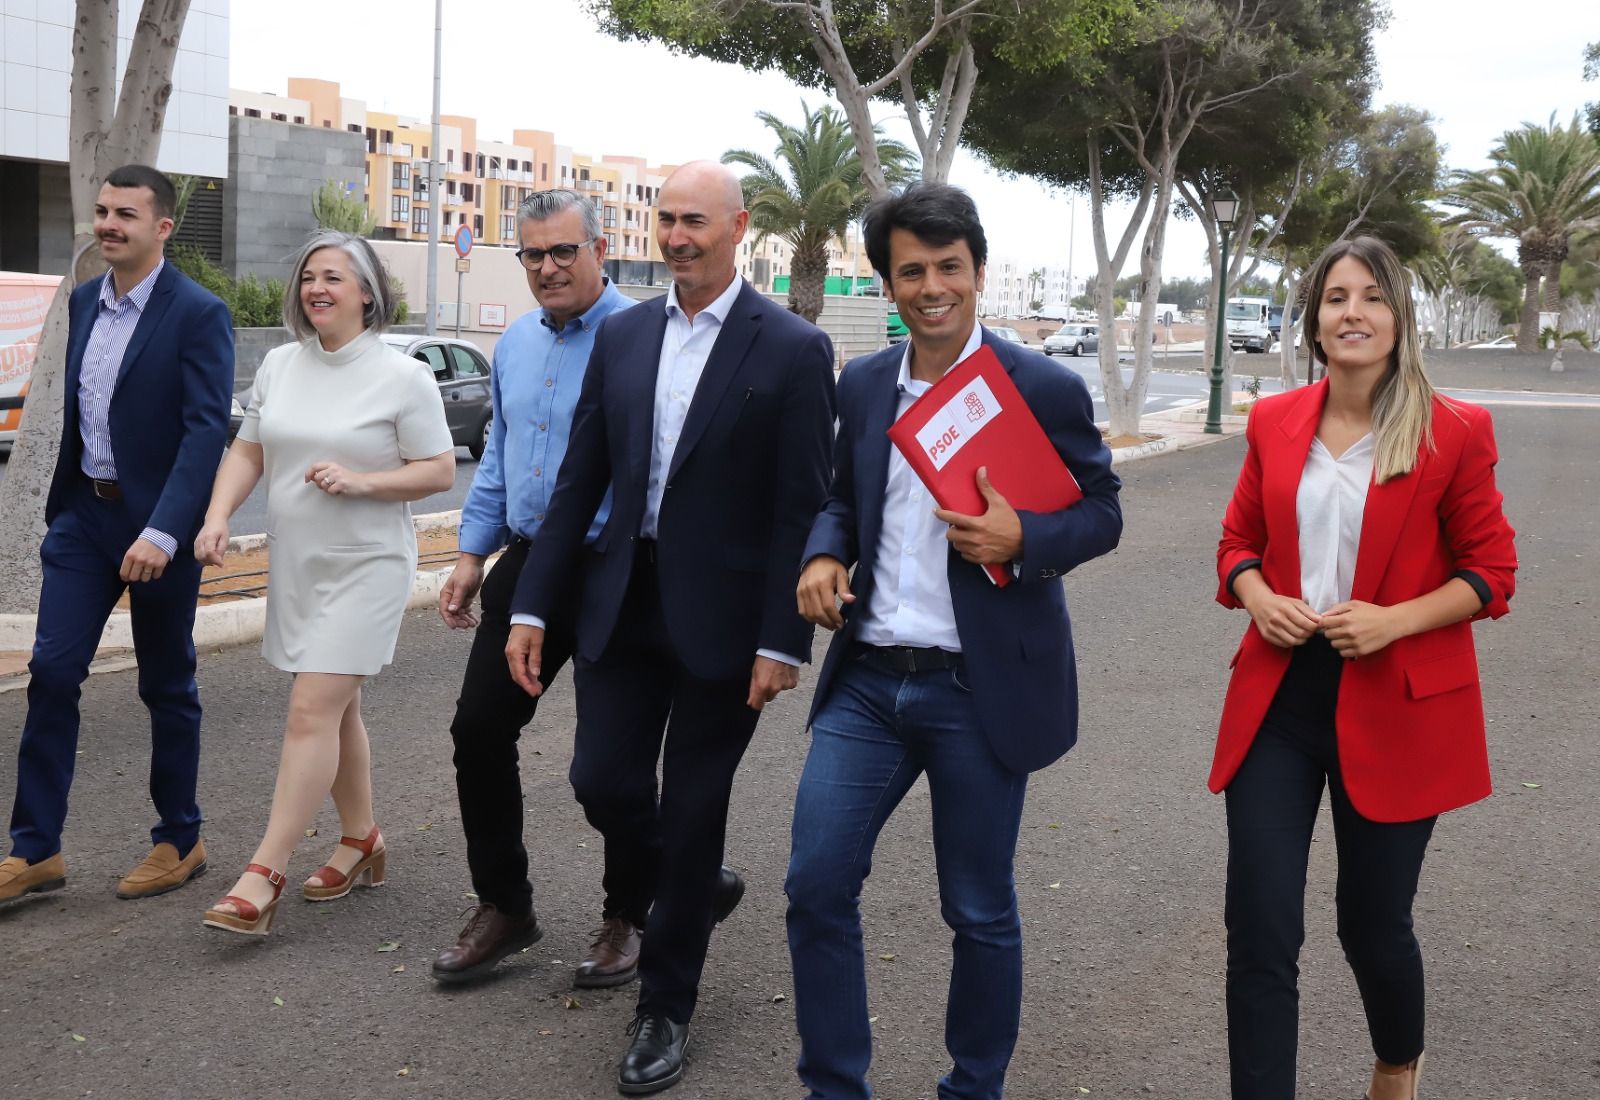 El candidato del PSOE a la alcaldía de Teguise, Marcos Bergaz, ha registrado a los 21 componentes de la plancha que lo acompañará en las próximas elecciones del 28 de mayo